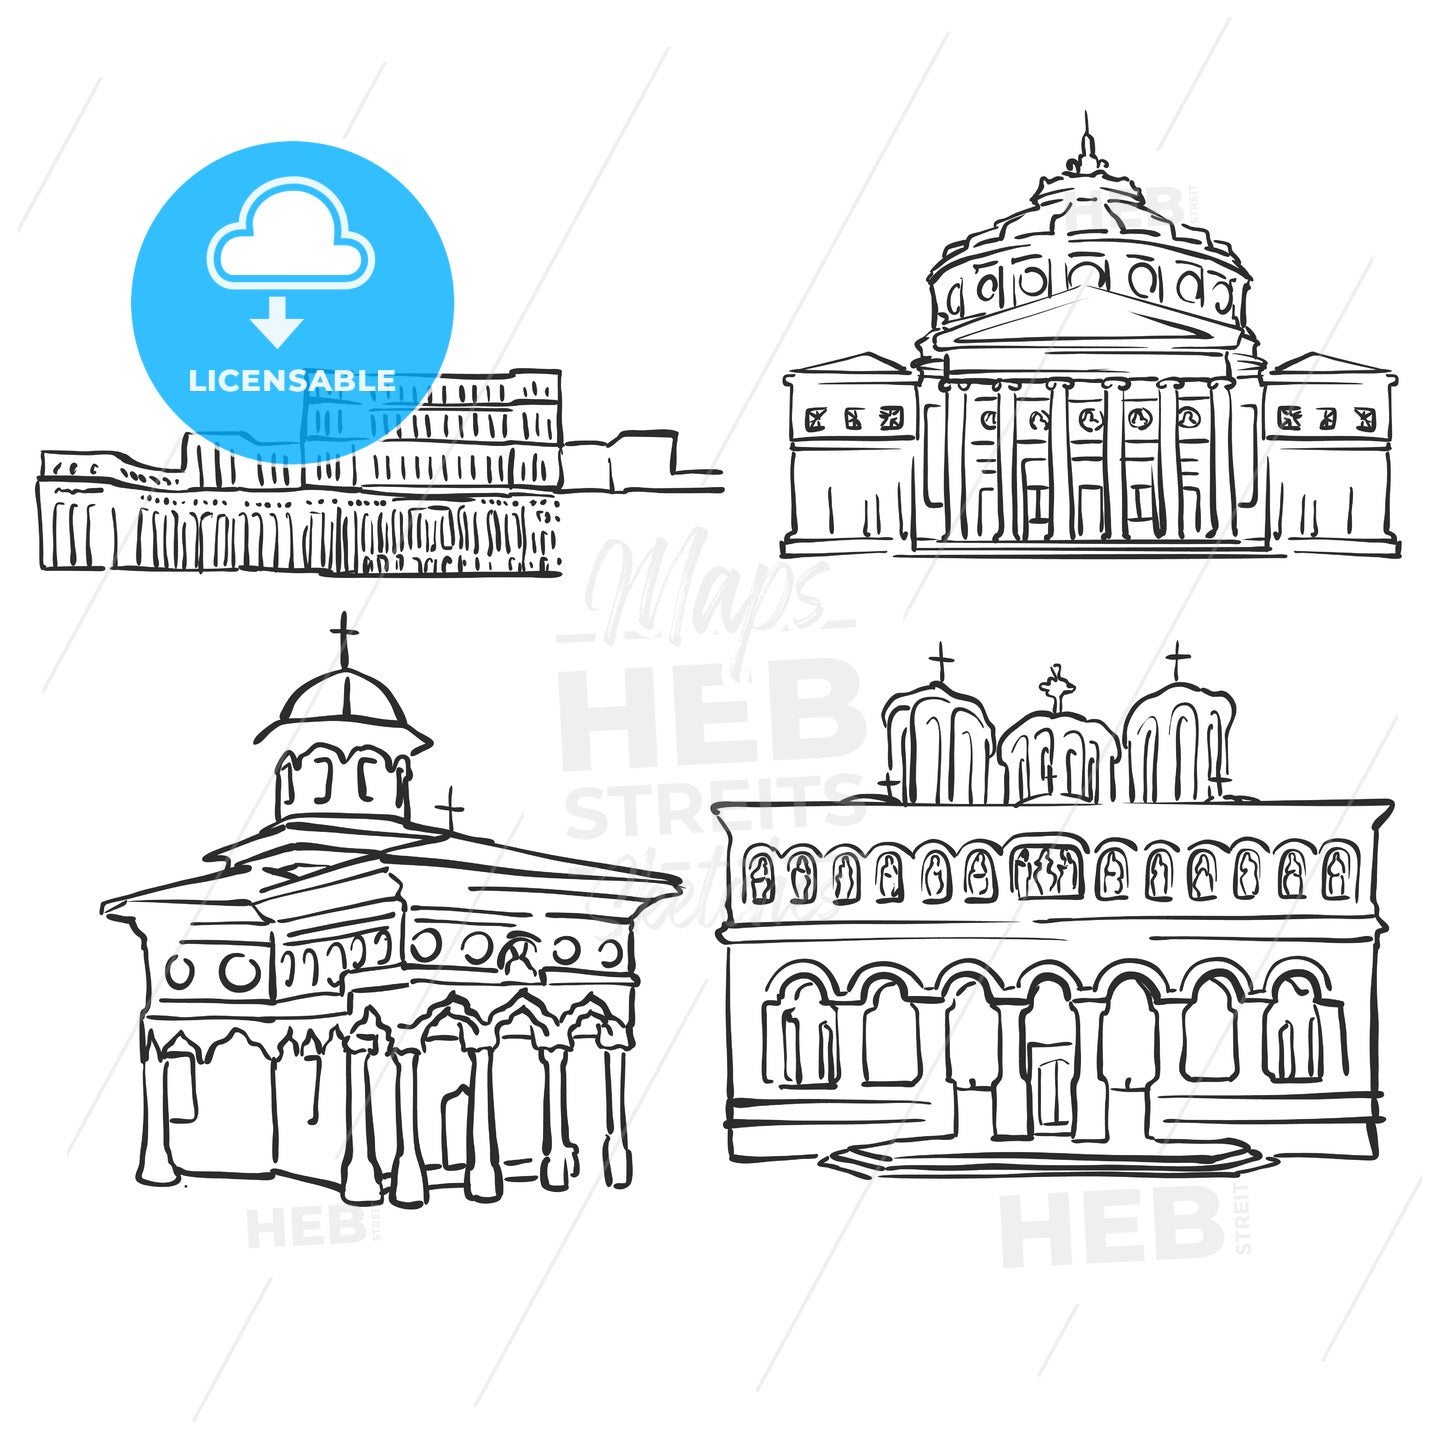 Bucharest, Romania, Famous Buildings – instant download